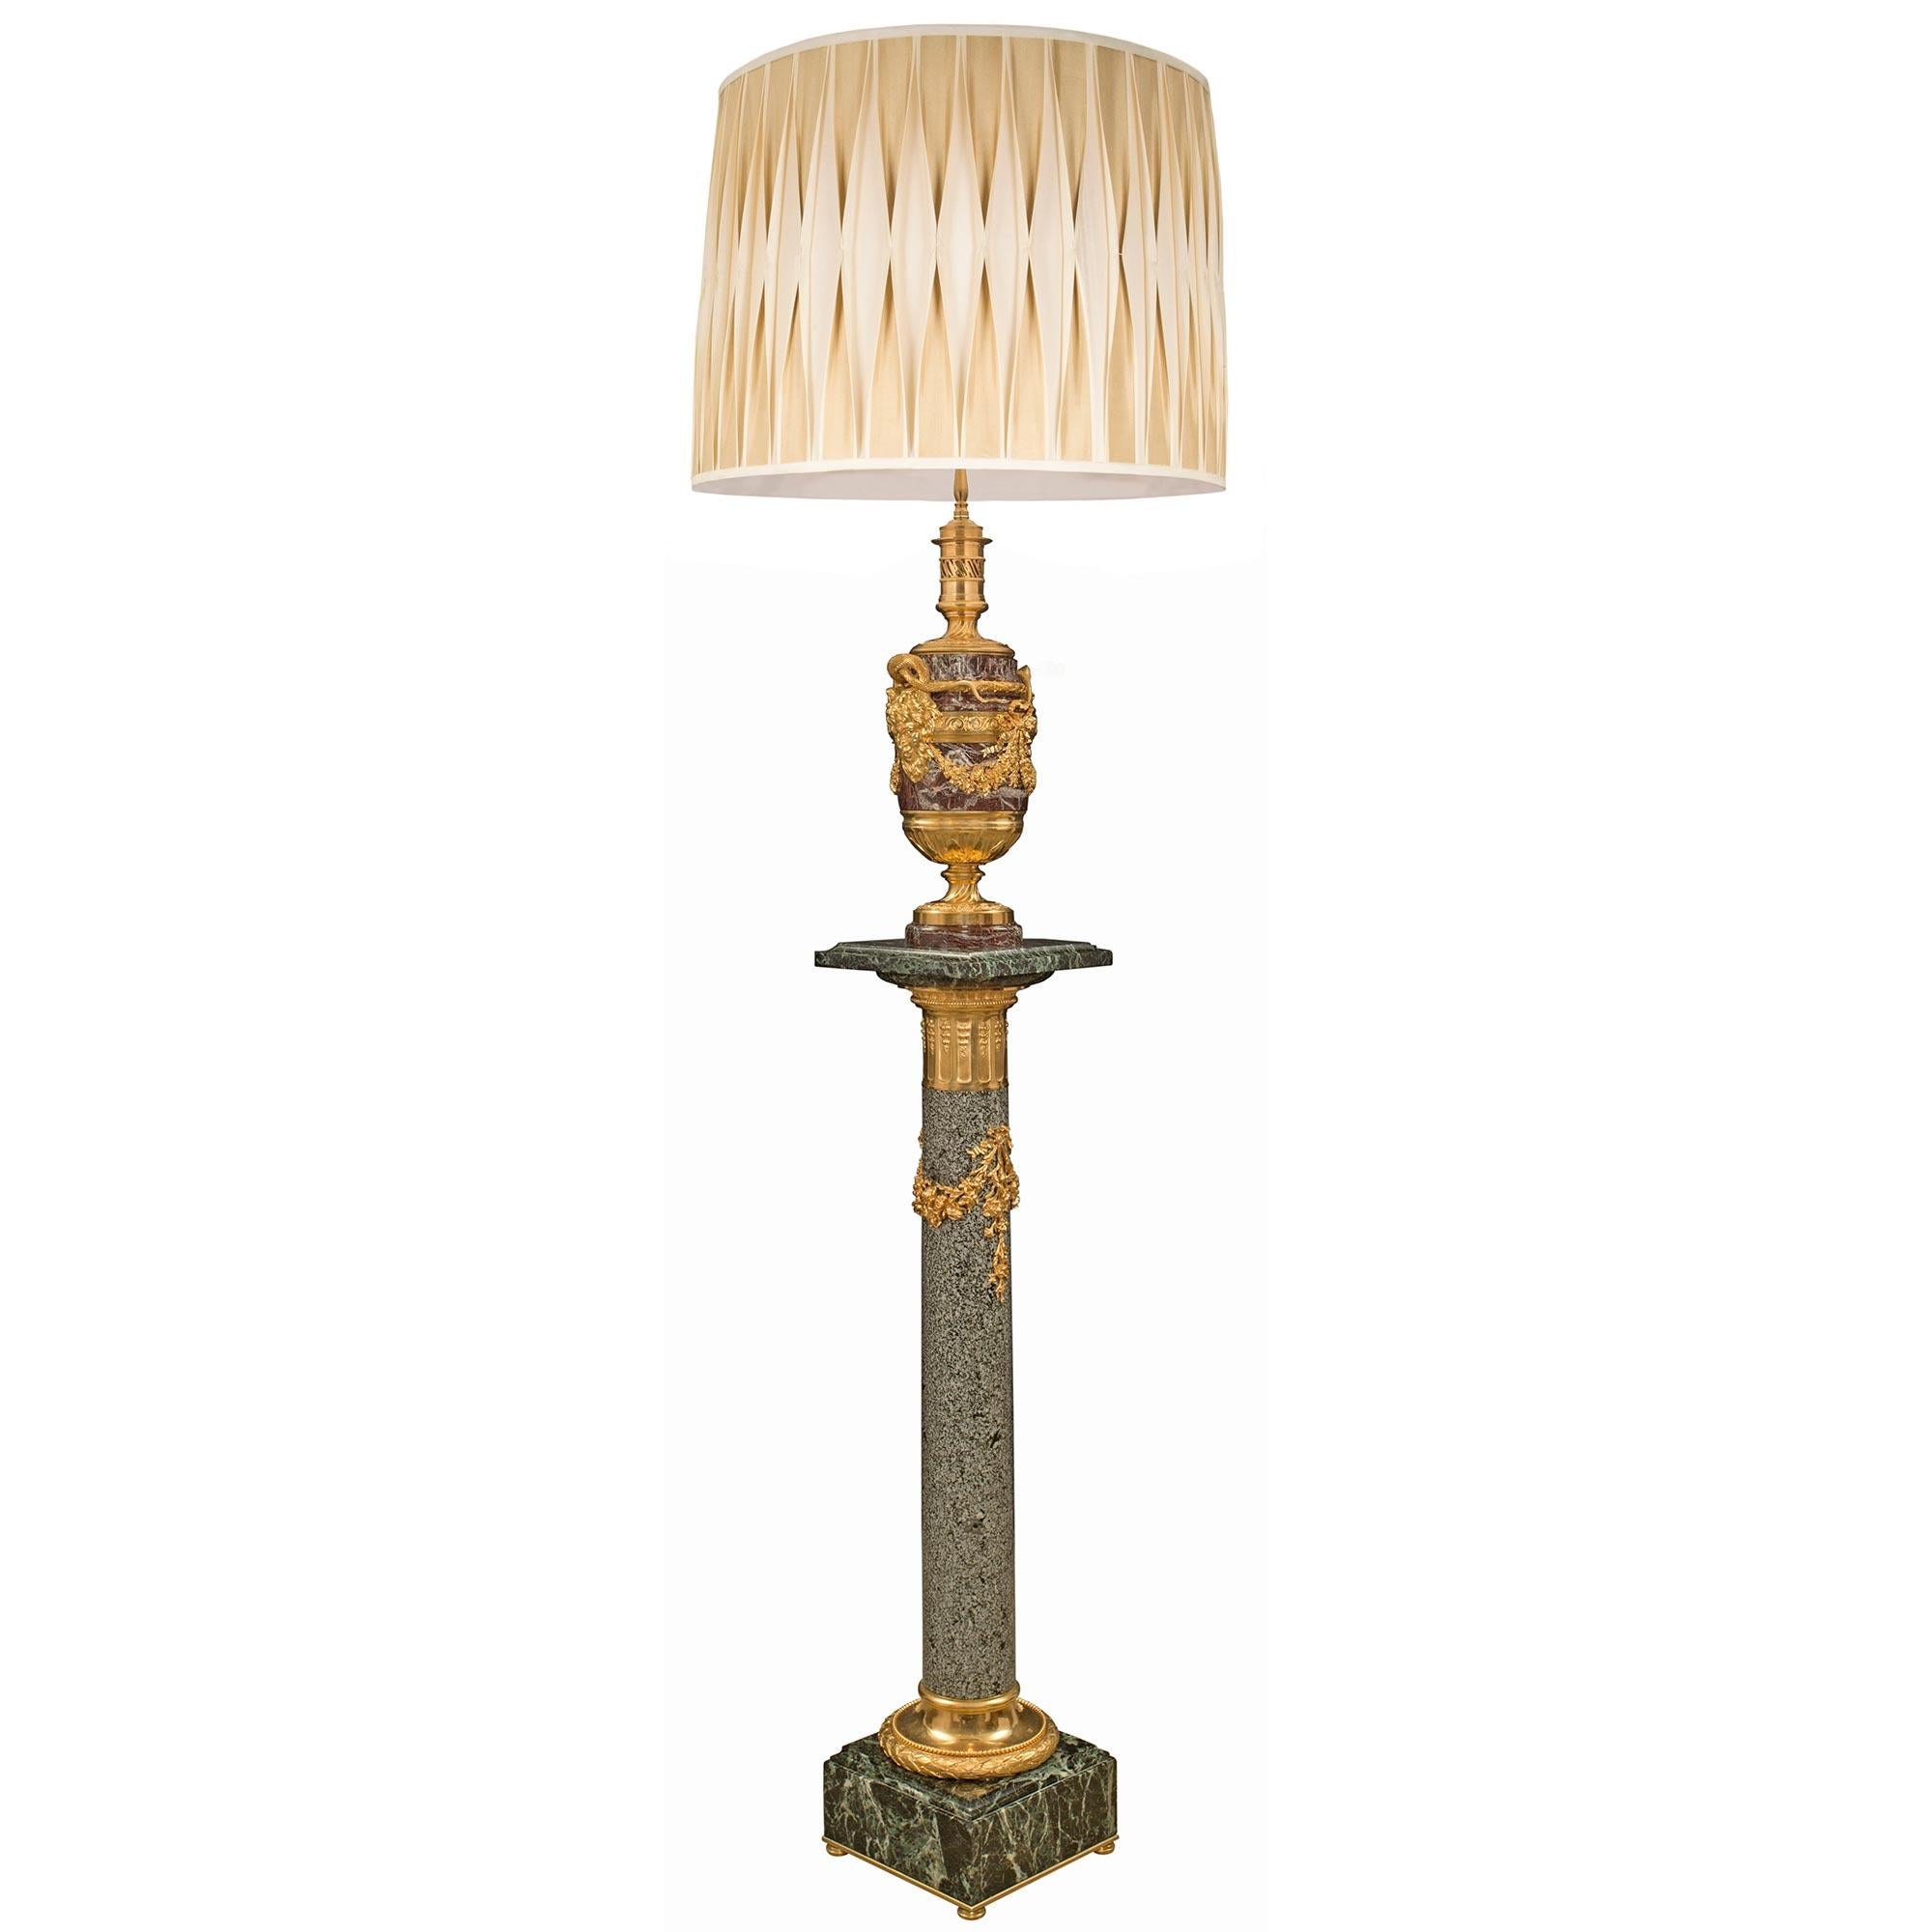 Eine atemberaubende französische Stehlampe aus der Belle Époque des 19. Jahrhunderts aus Rosso Levanto und Vert de Patricia Marmor, Granit und Ormolu, die Henry Dasson zugeschrieben wird. Die Stehlampe war früher eine Öllampe und steht auf einem